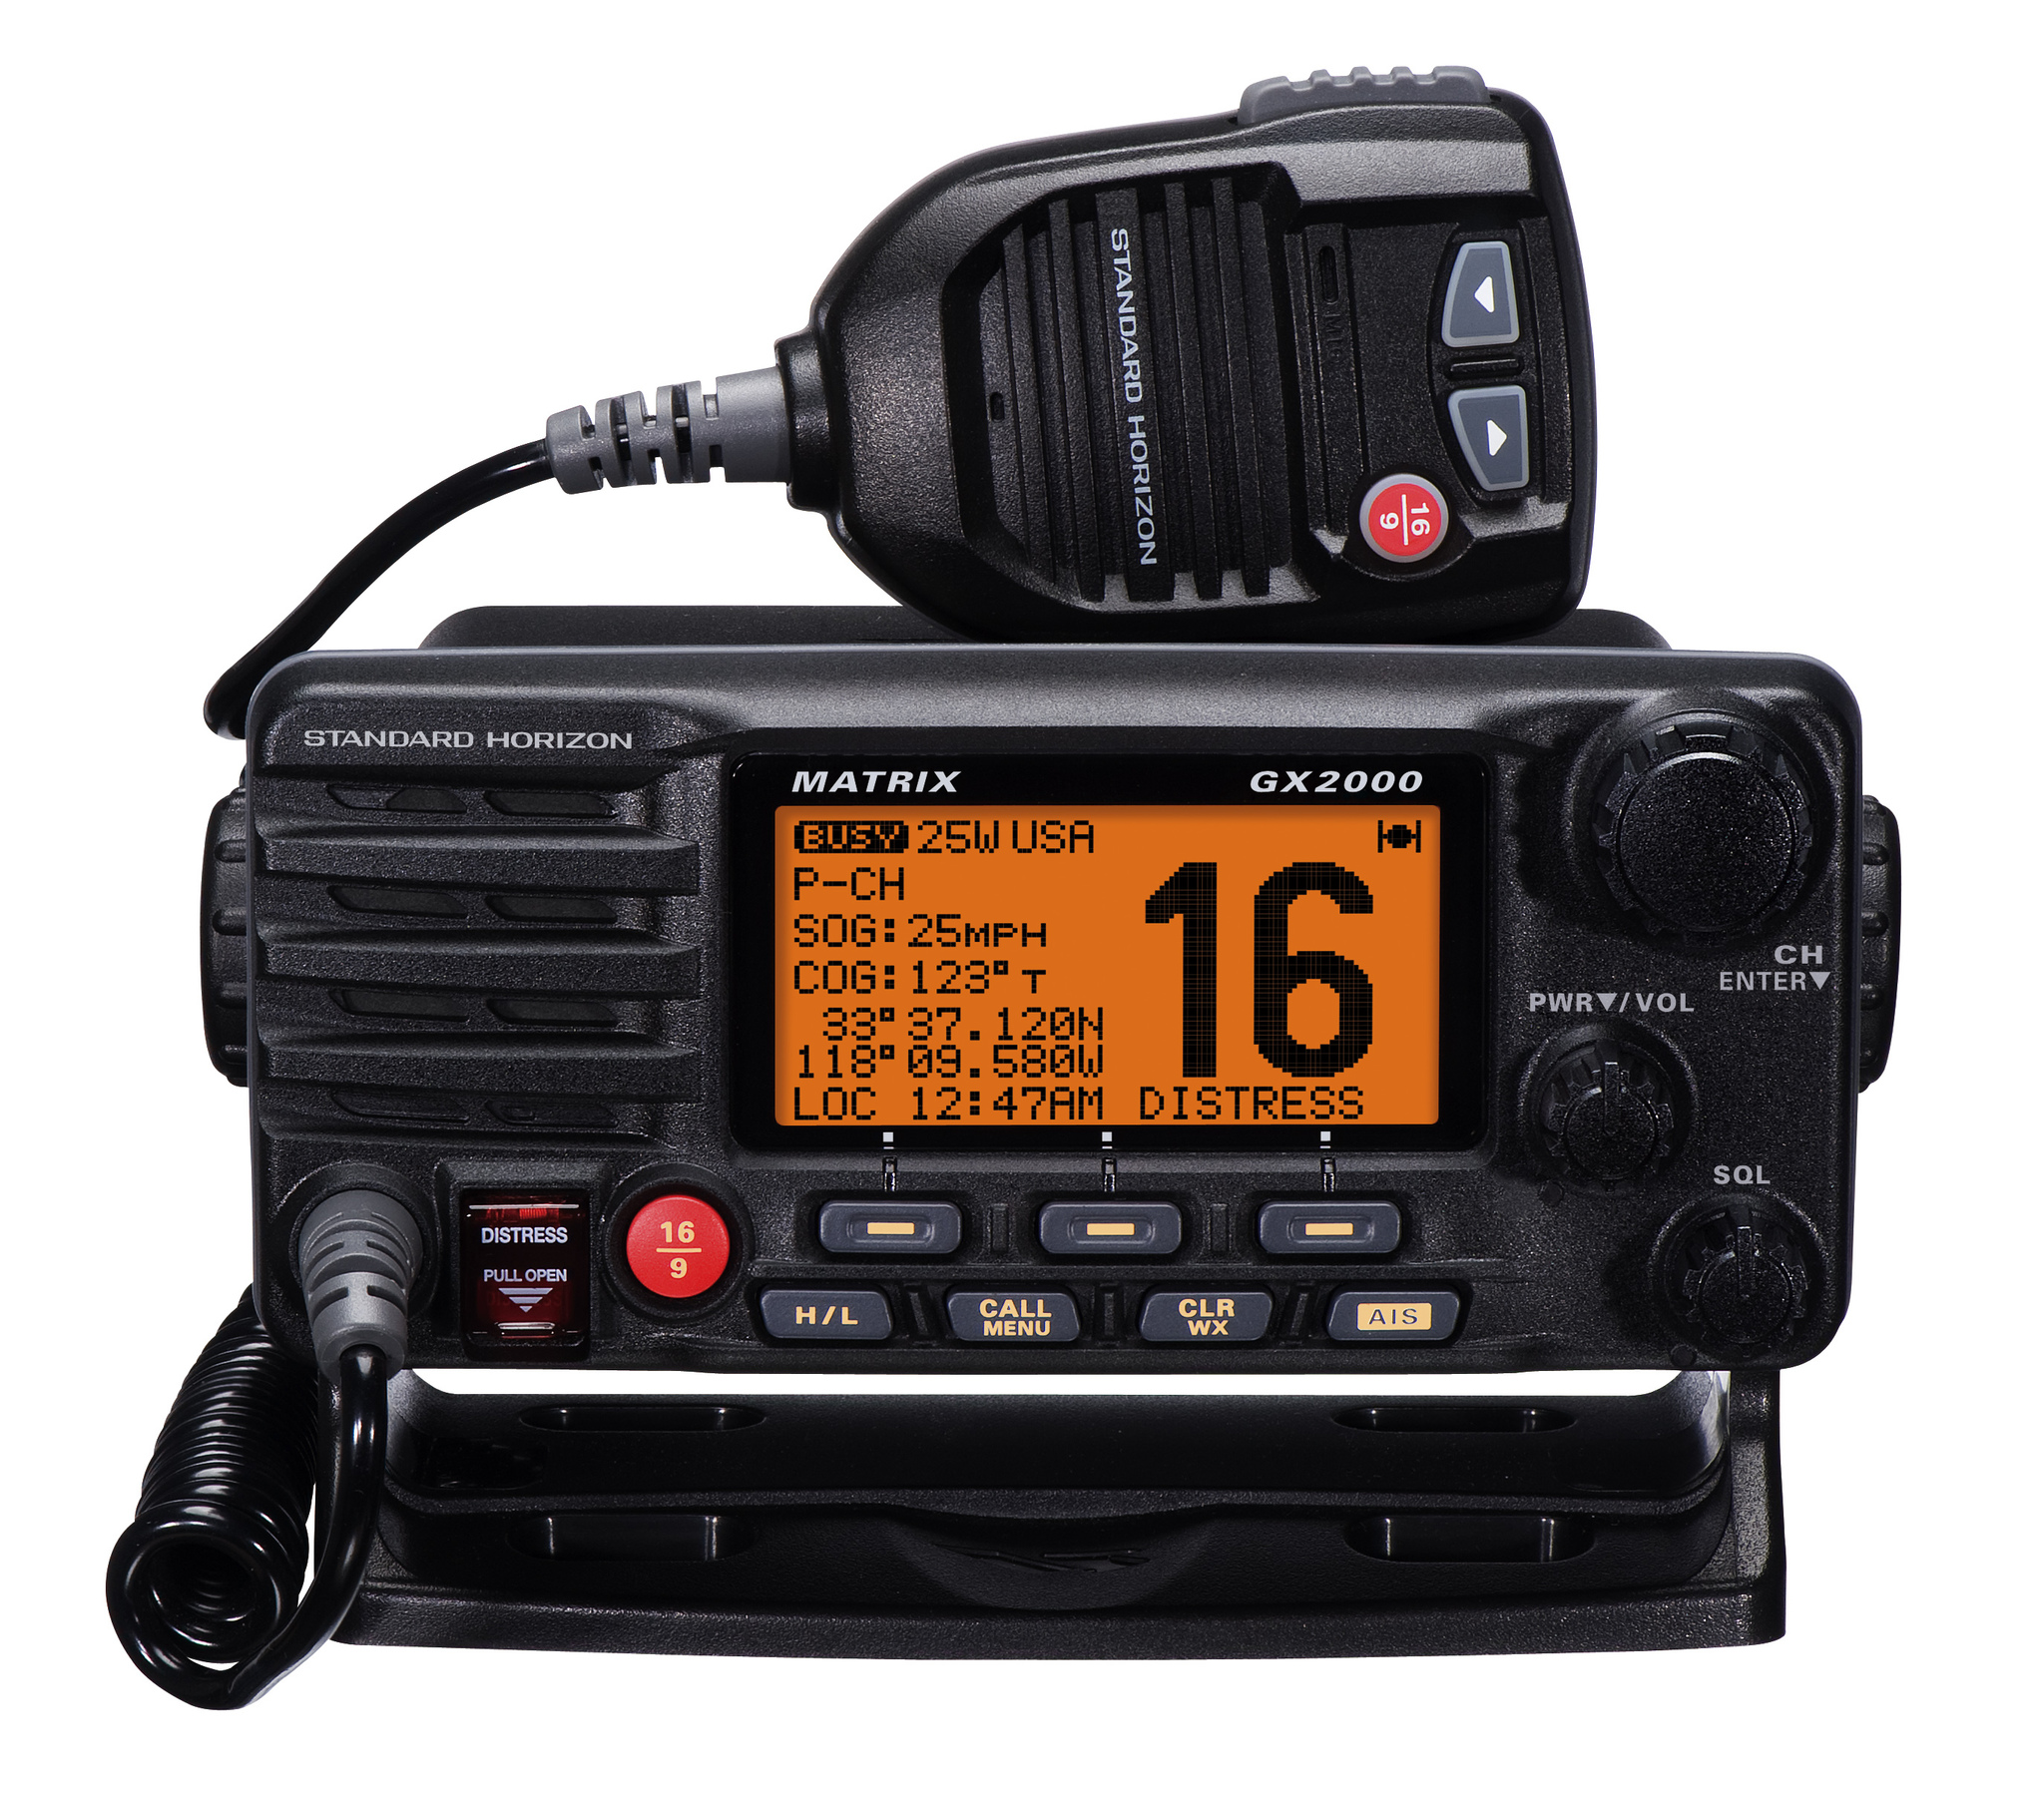  Standard Horizon - Kiinteä VHF 25 W:lla, vaihtoehto toiselle mikrofonille, hailerille ja ulkoiselle AIS:lle